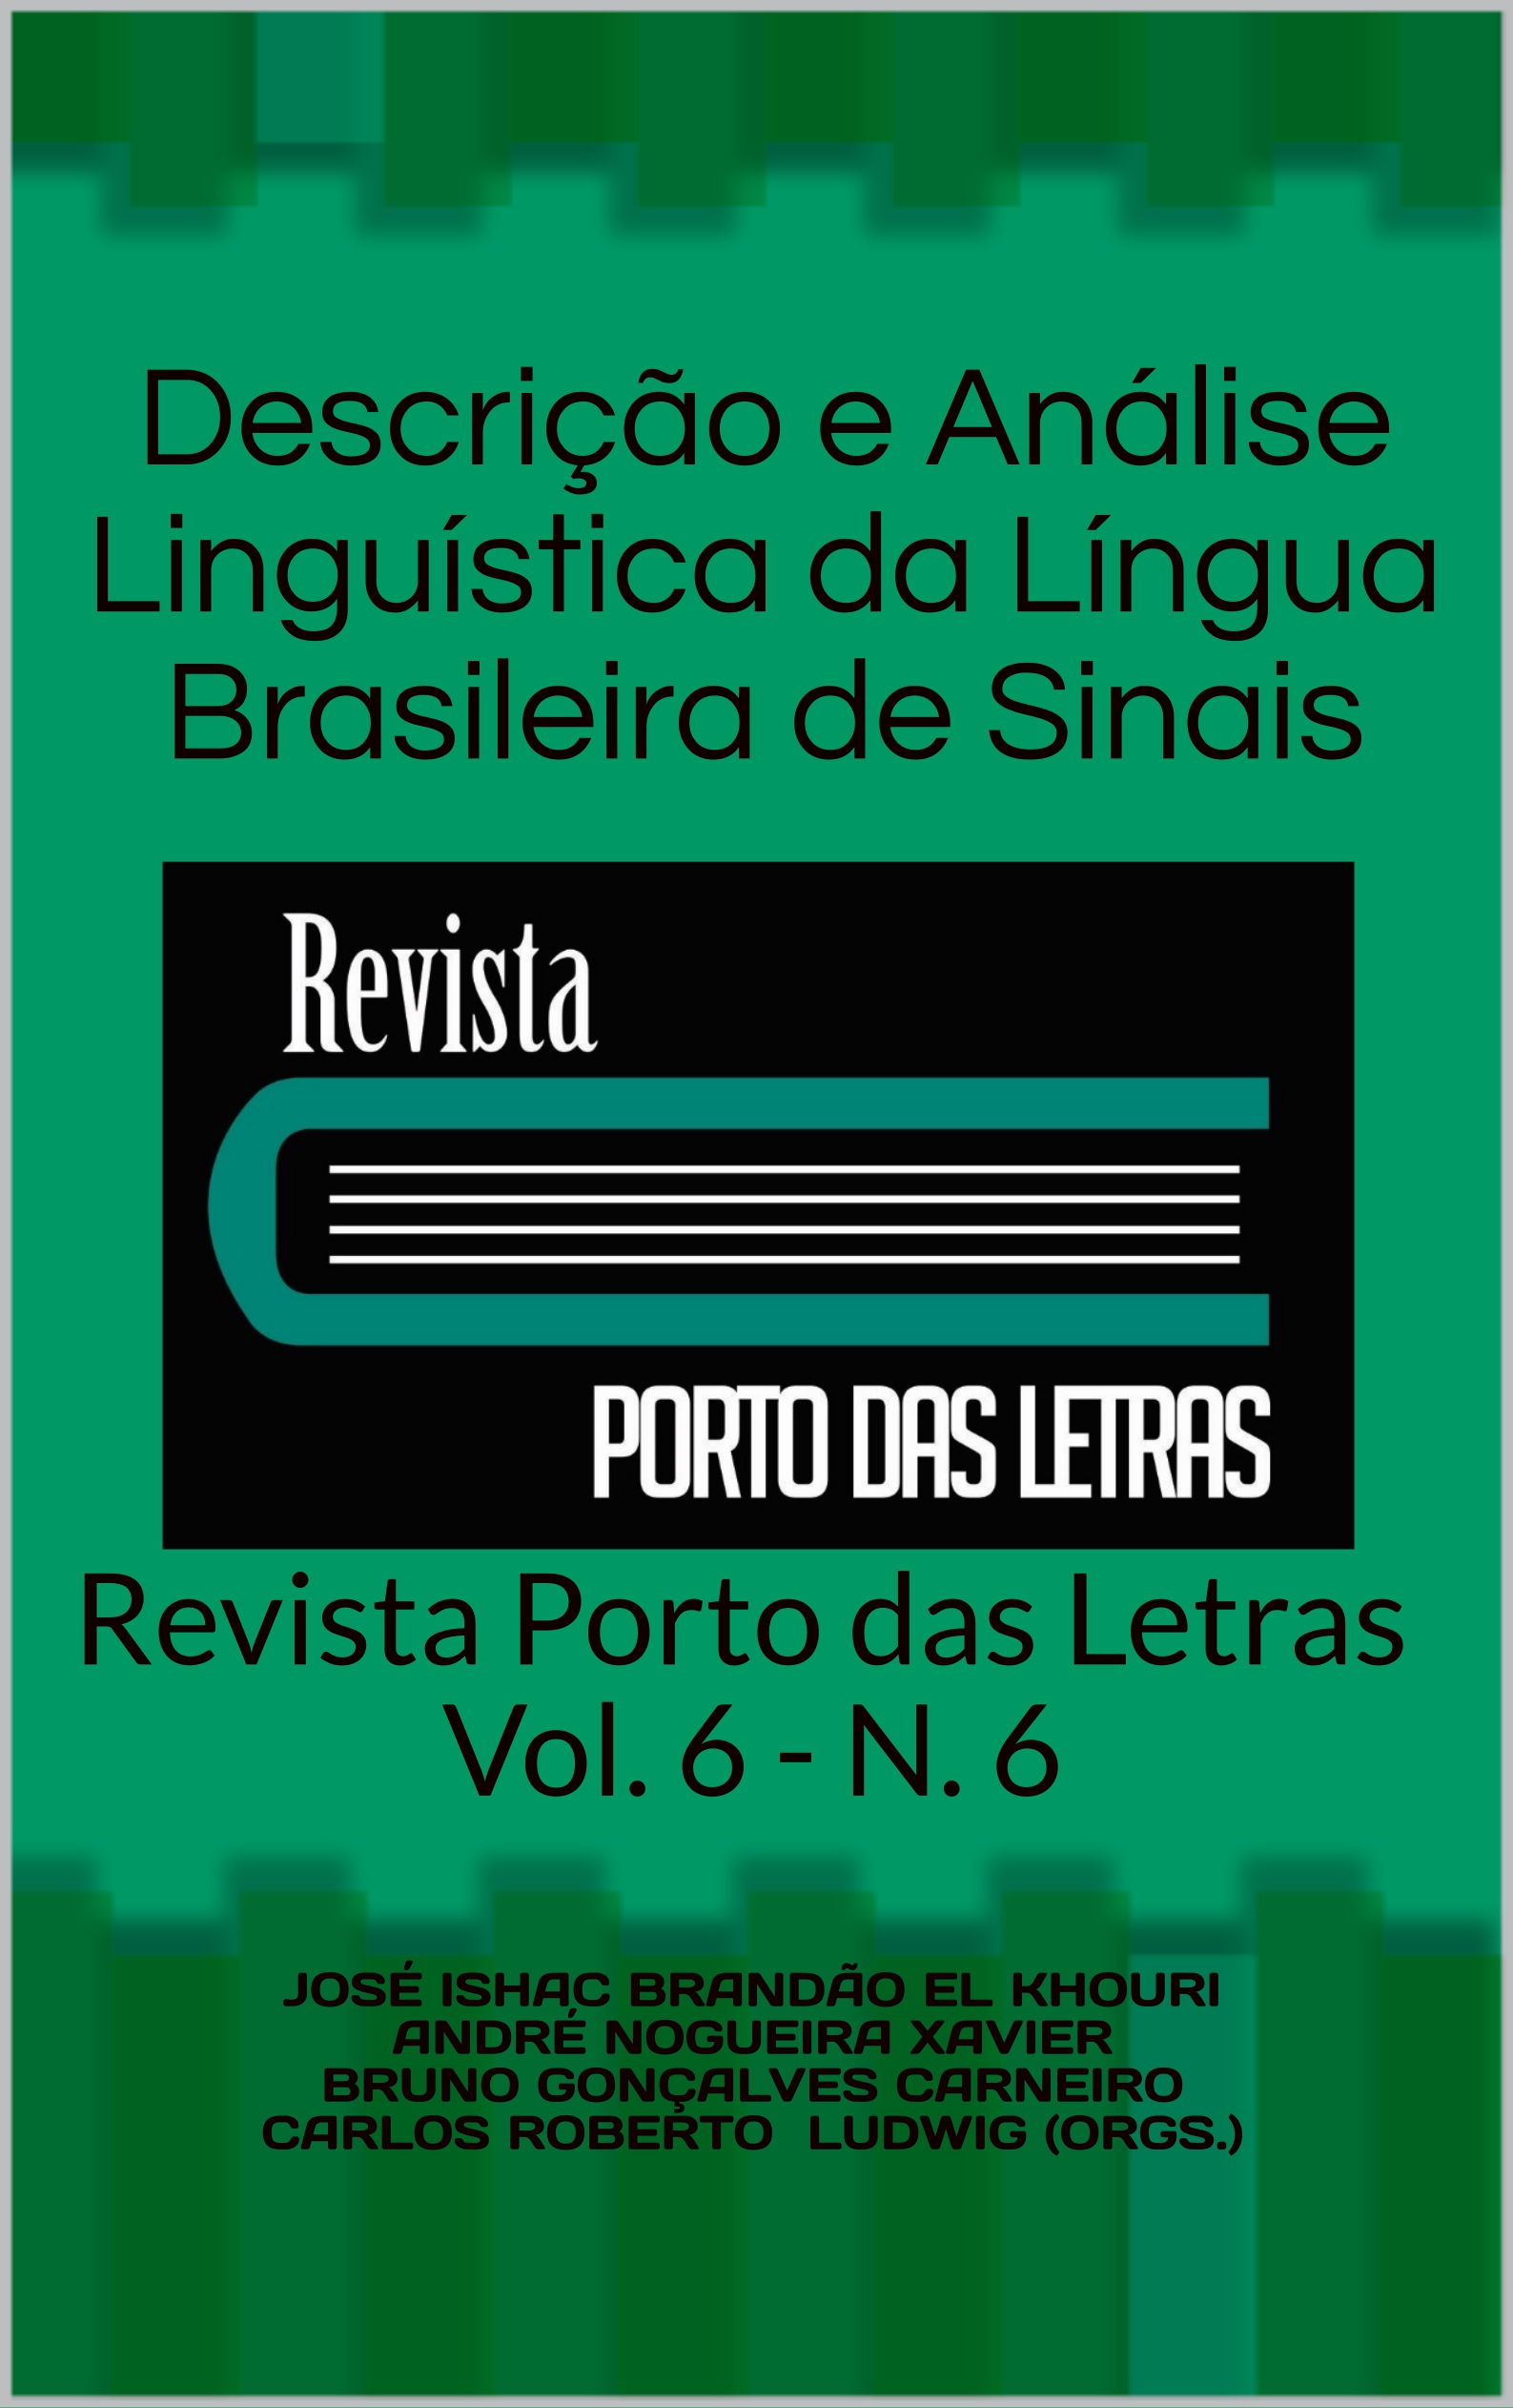 					Visualizar v. 6 n. 6 (2020): Descrição e Análise Linguística da Língua Brasileira de Sinais
				